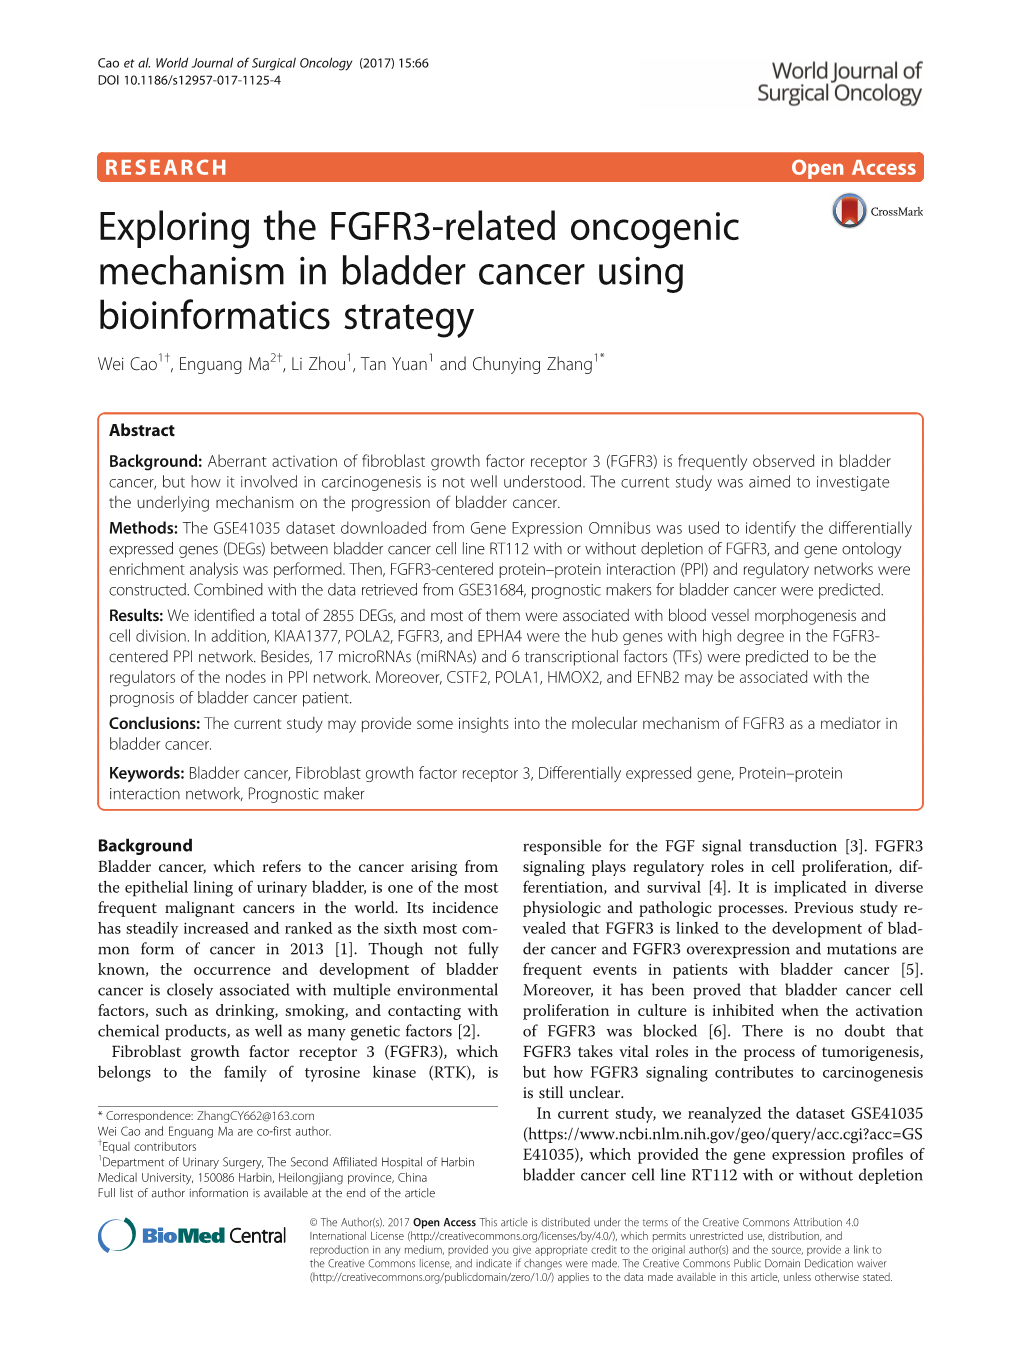 Exploring the FGFR3-Related Oncogenic Mechanism in Bladder Cancer Using Bioinformatics Strategy Wei Cao1†, Enguang Ma2†, Li Zhou1, Tan Yuan1 and Chunying Zhang1*